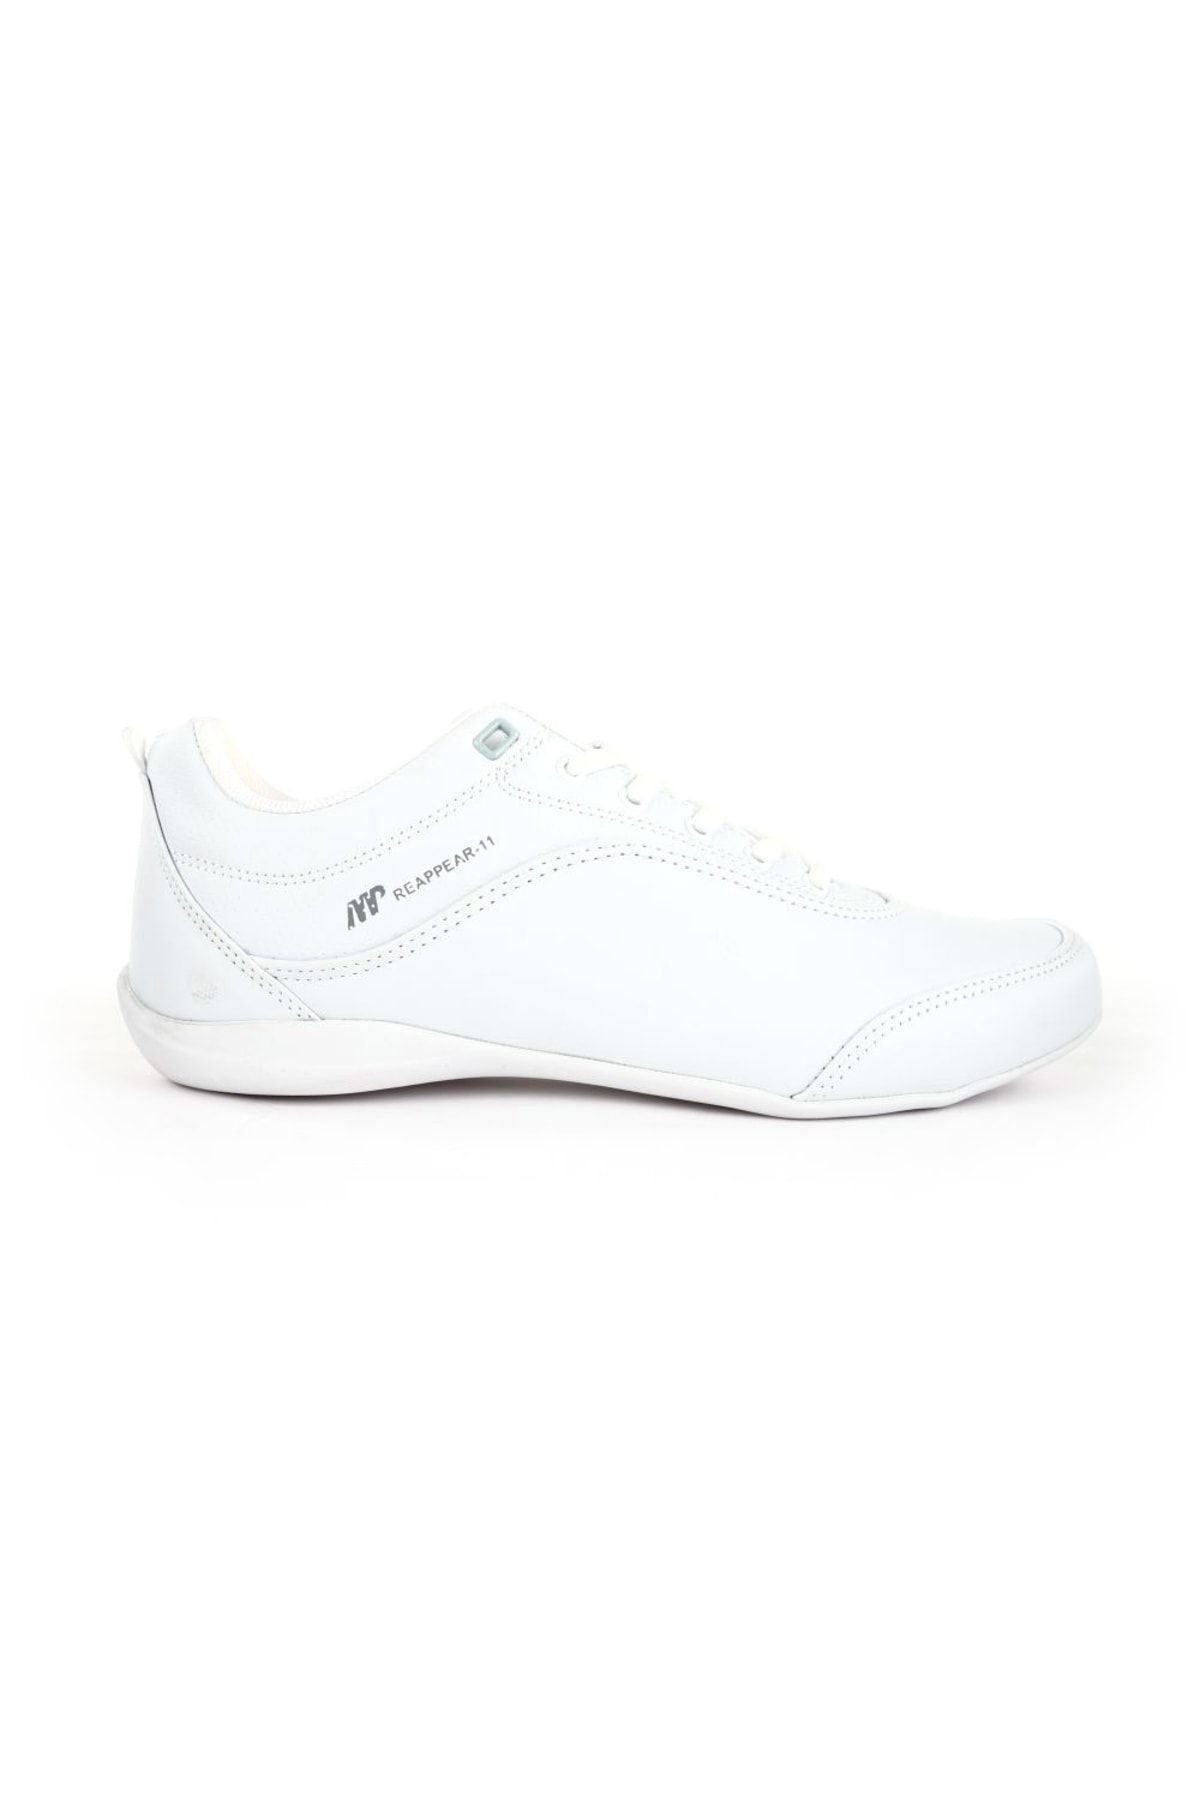 MP Mp Erkek Cilt Beyaz Sneaker Ayakkabı 201-7332mr 650